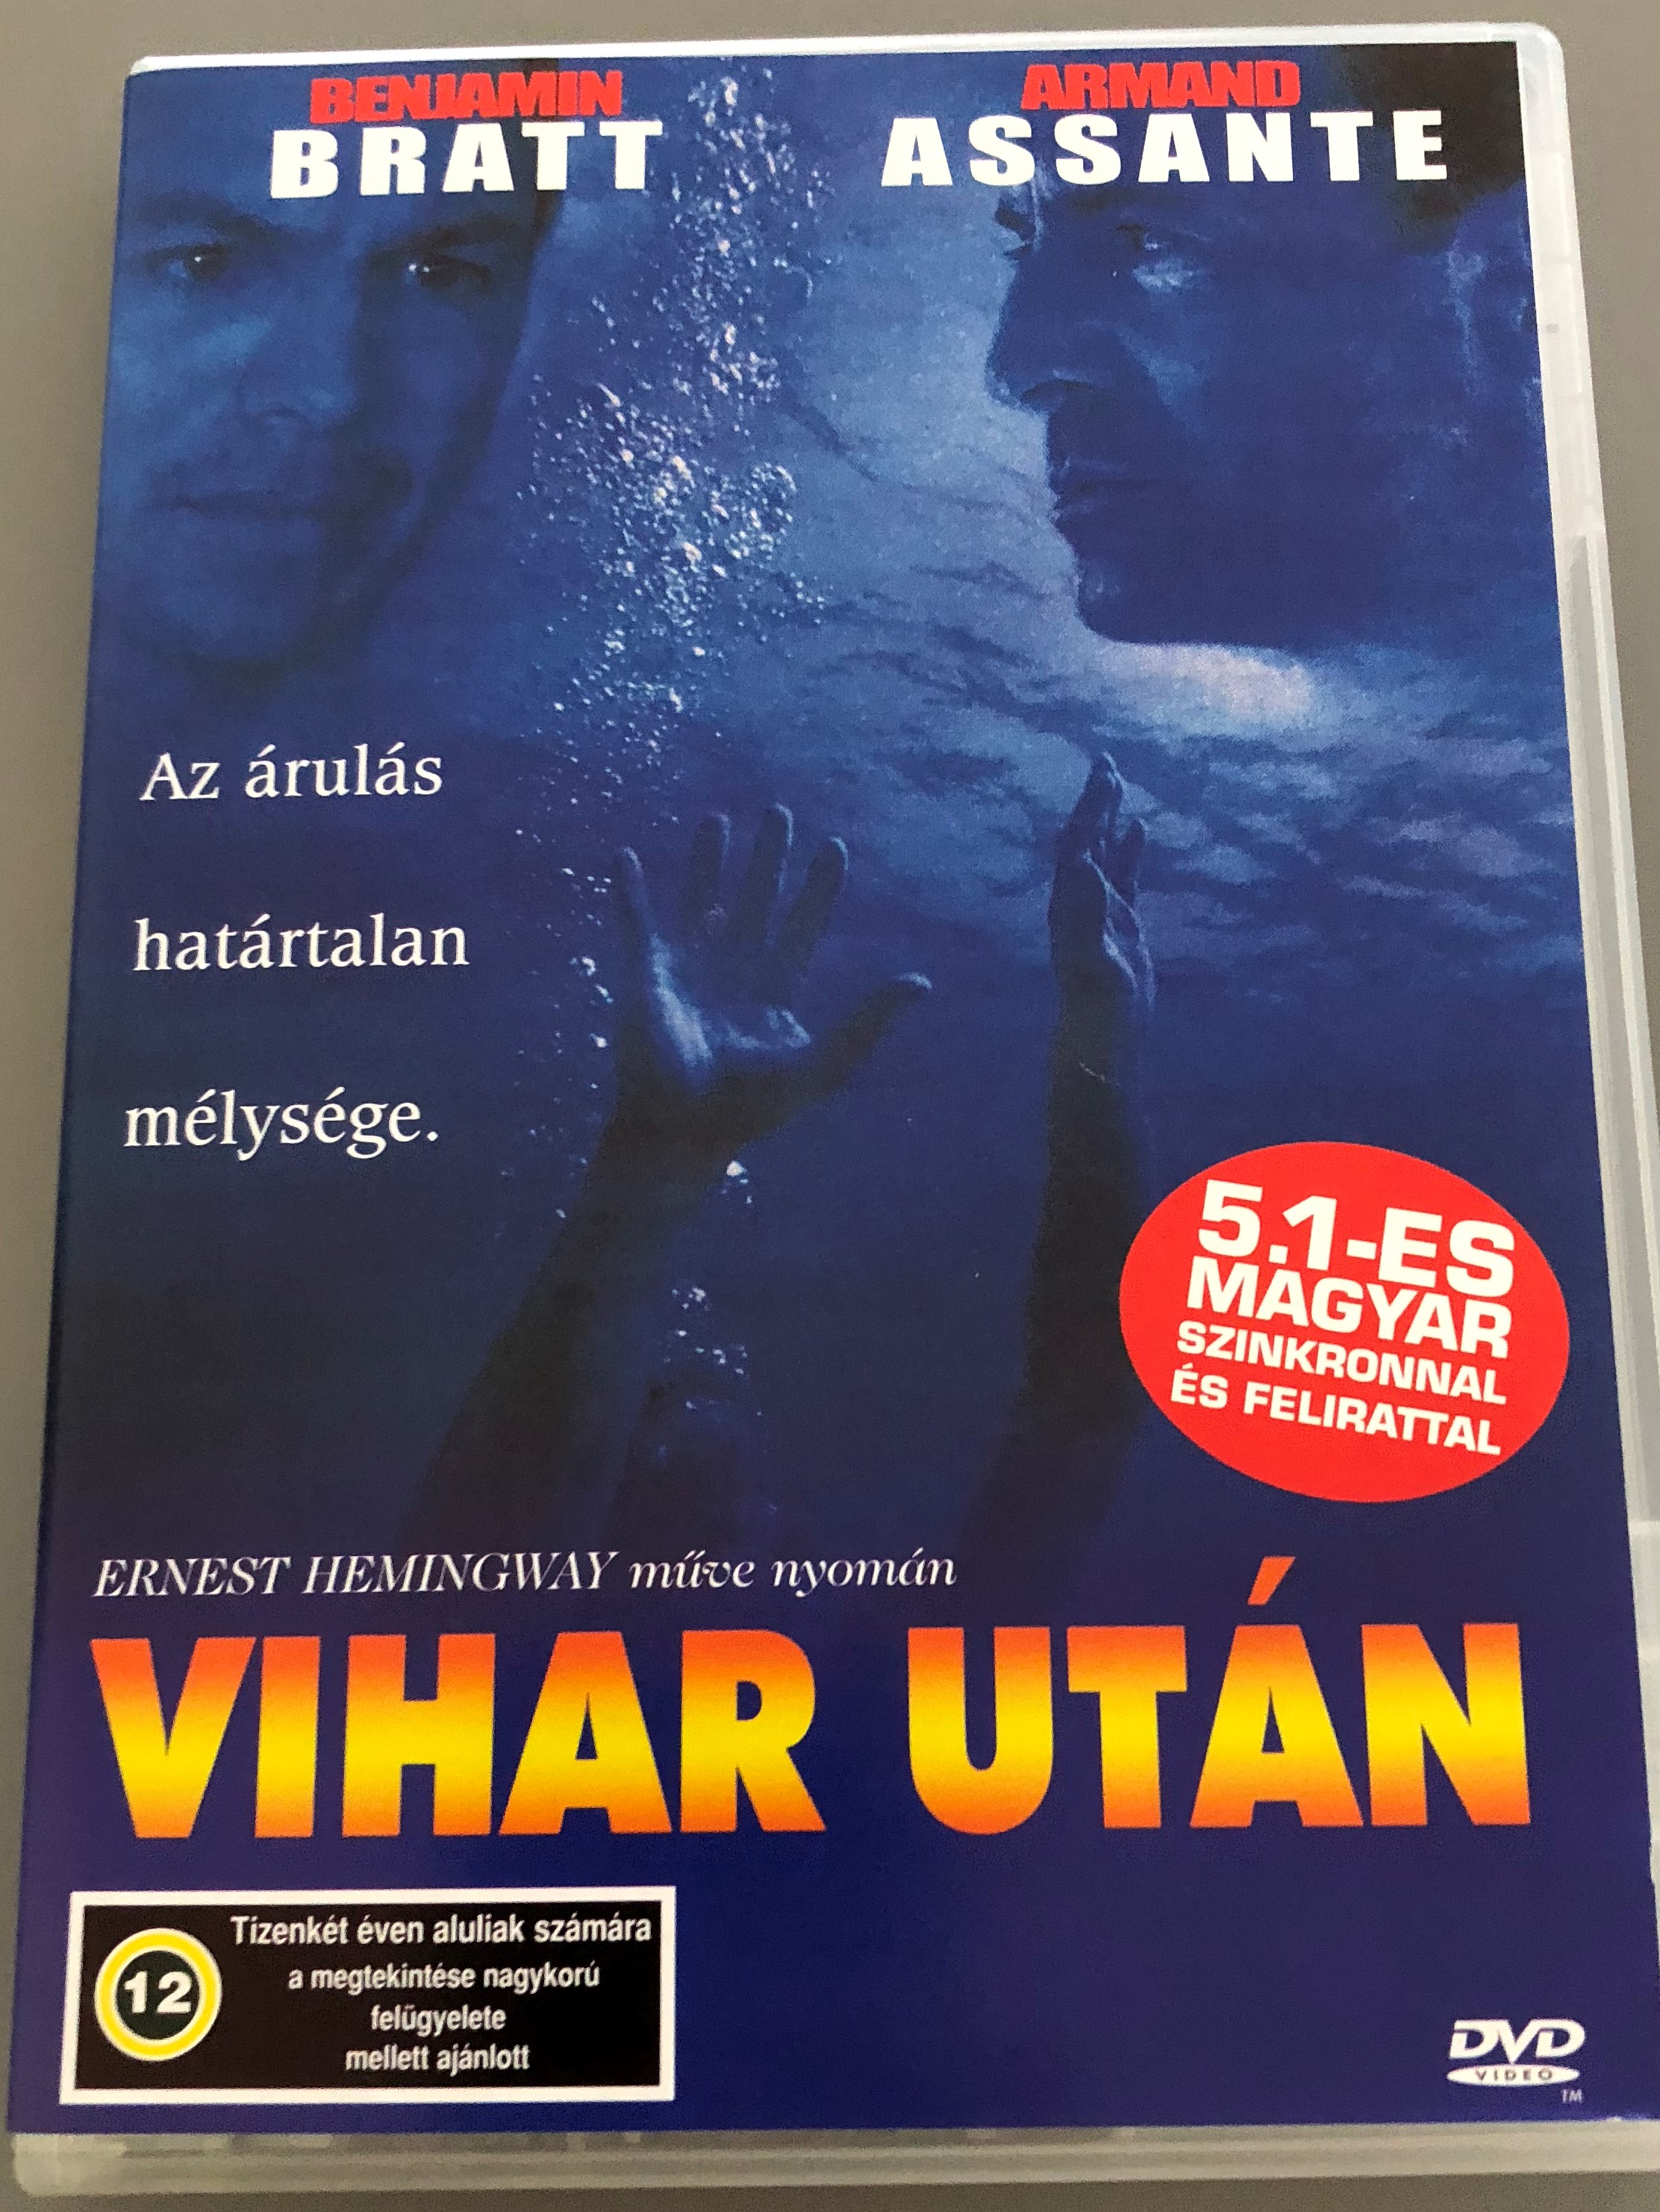 after-the-storm-dvd-2011-vihar-ut-n-directed-by-guy-ferland-starring-benjamin-bratt-armand-assante-based-on-ernest-hemingway-s-novel-1-.jpg